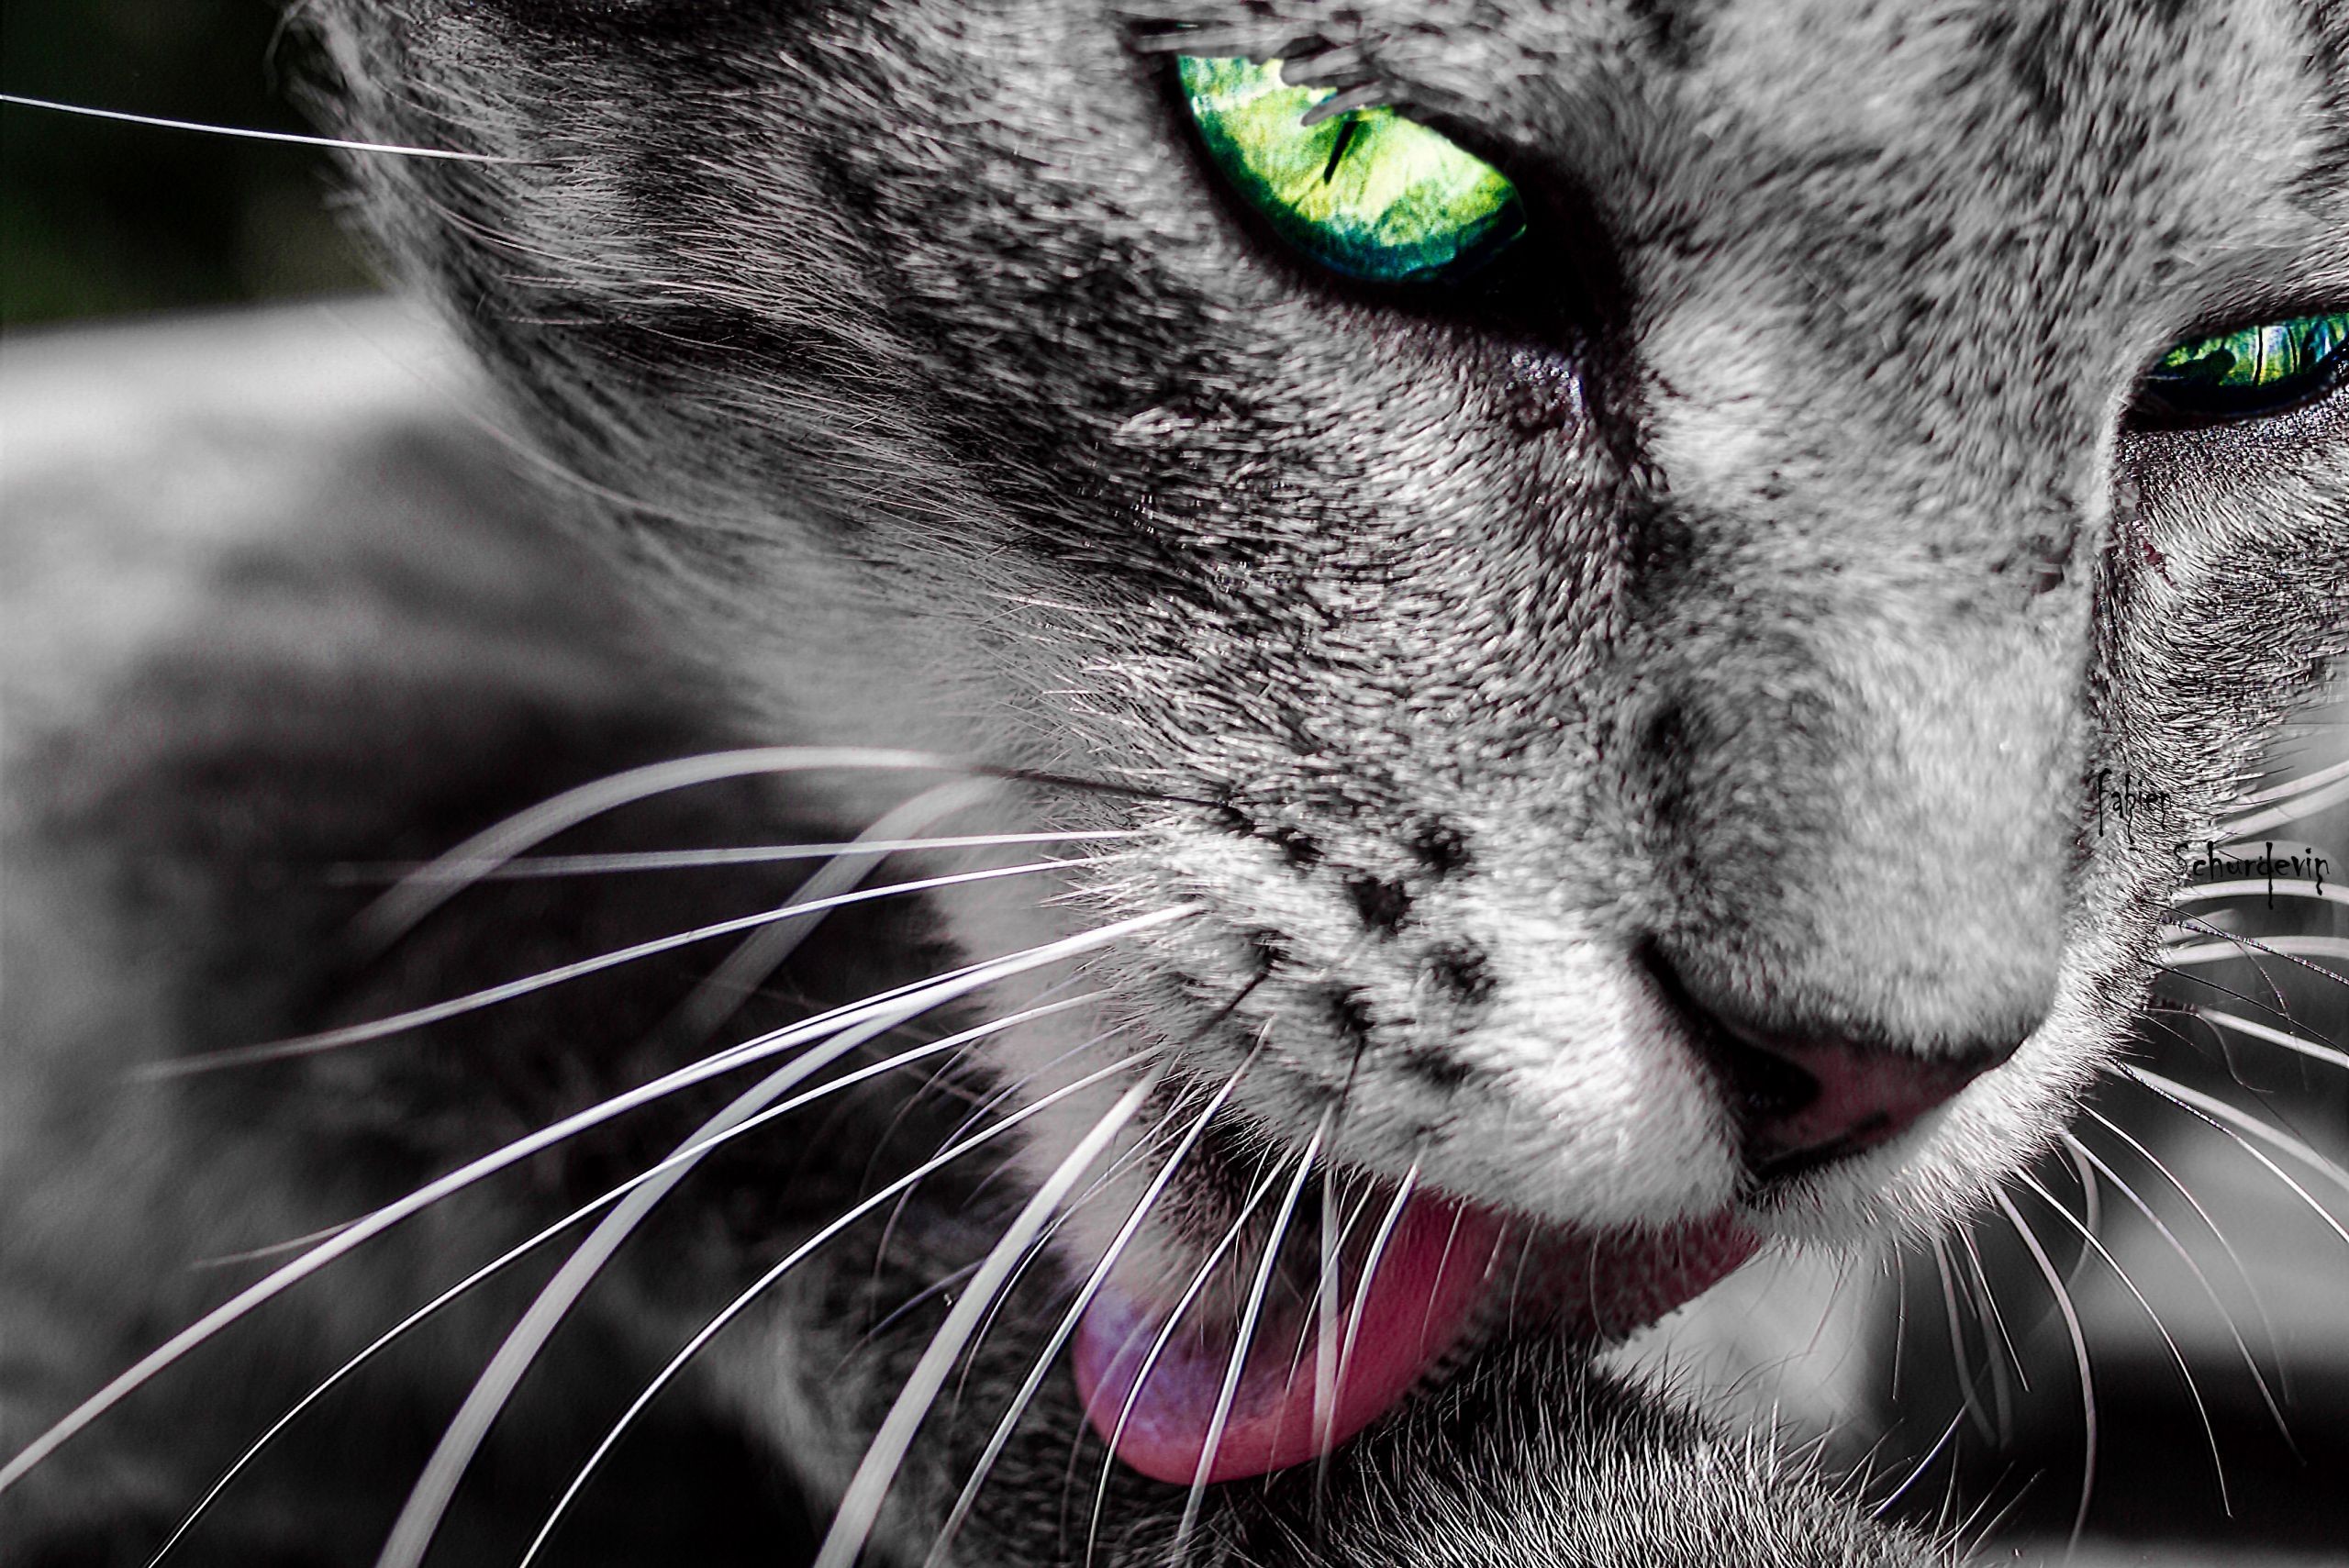 General 2560x1709 cats selective coloring green eyes licking tongue out animals closeup photo manipulation mammals